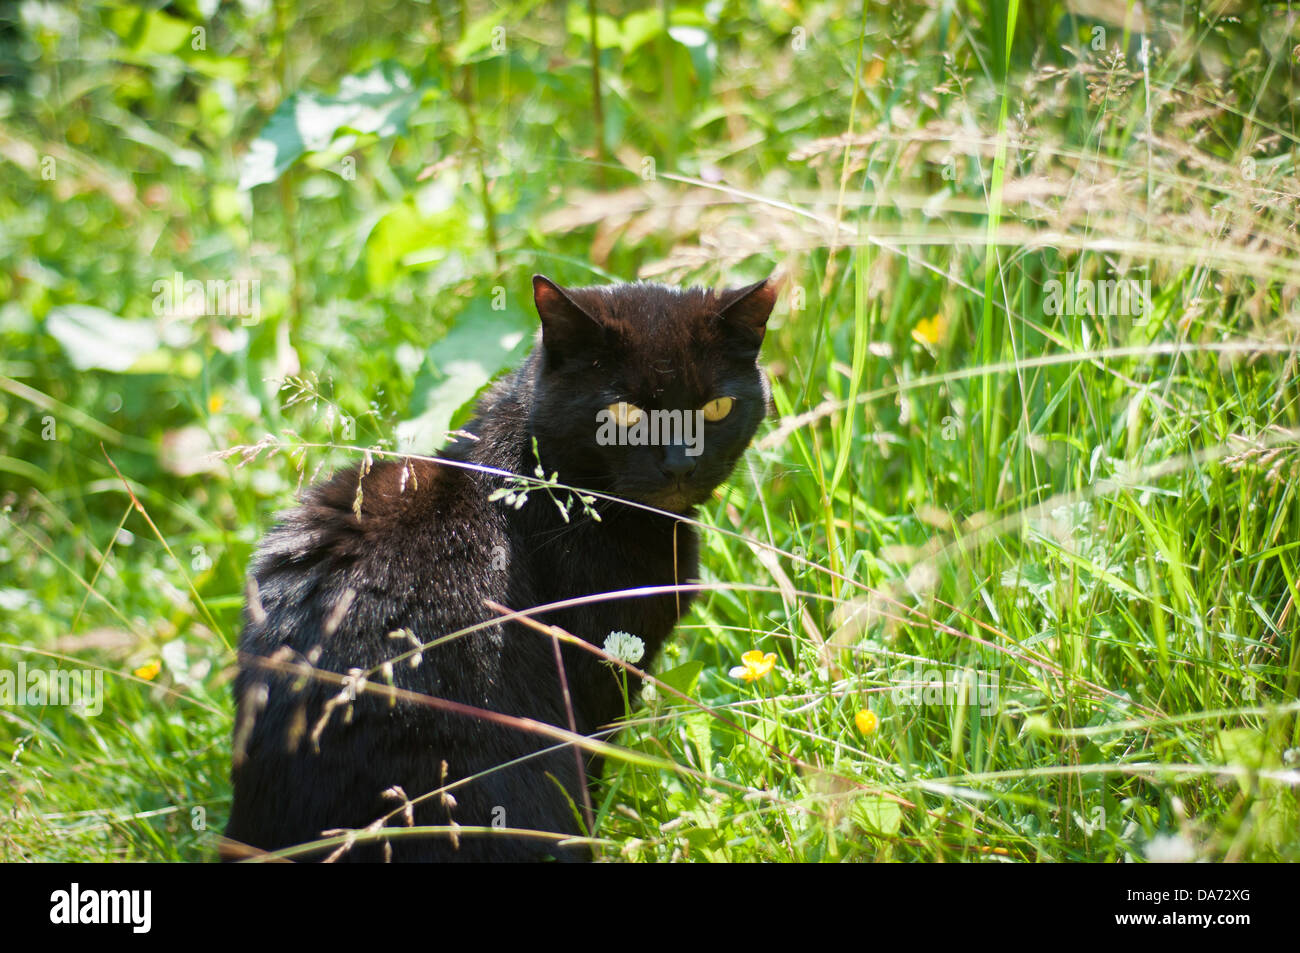 Un chat noir avec des yeux jaunes perçants regardant se trouve dans un jardin d'herbe verte en été Banque D'Images